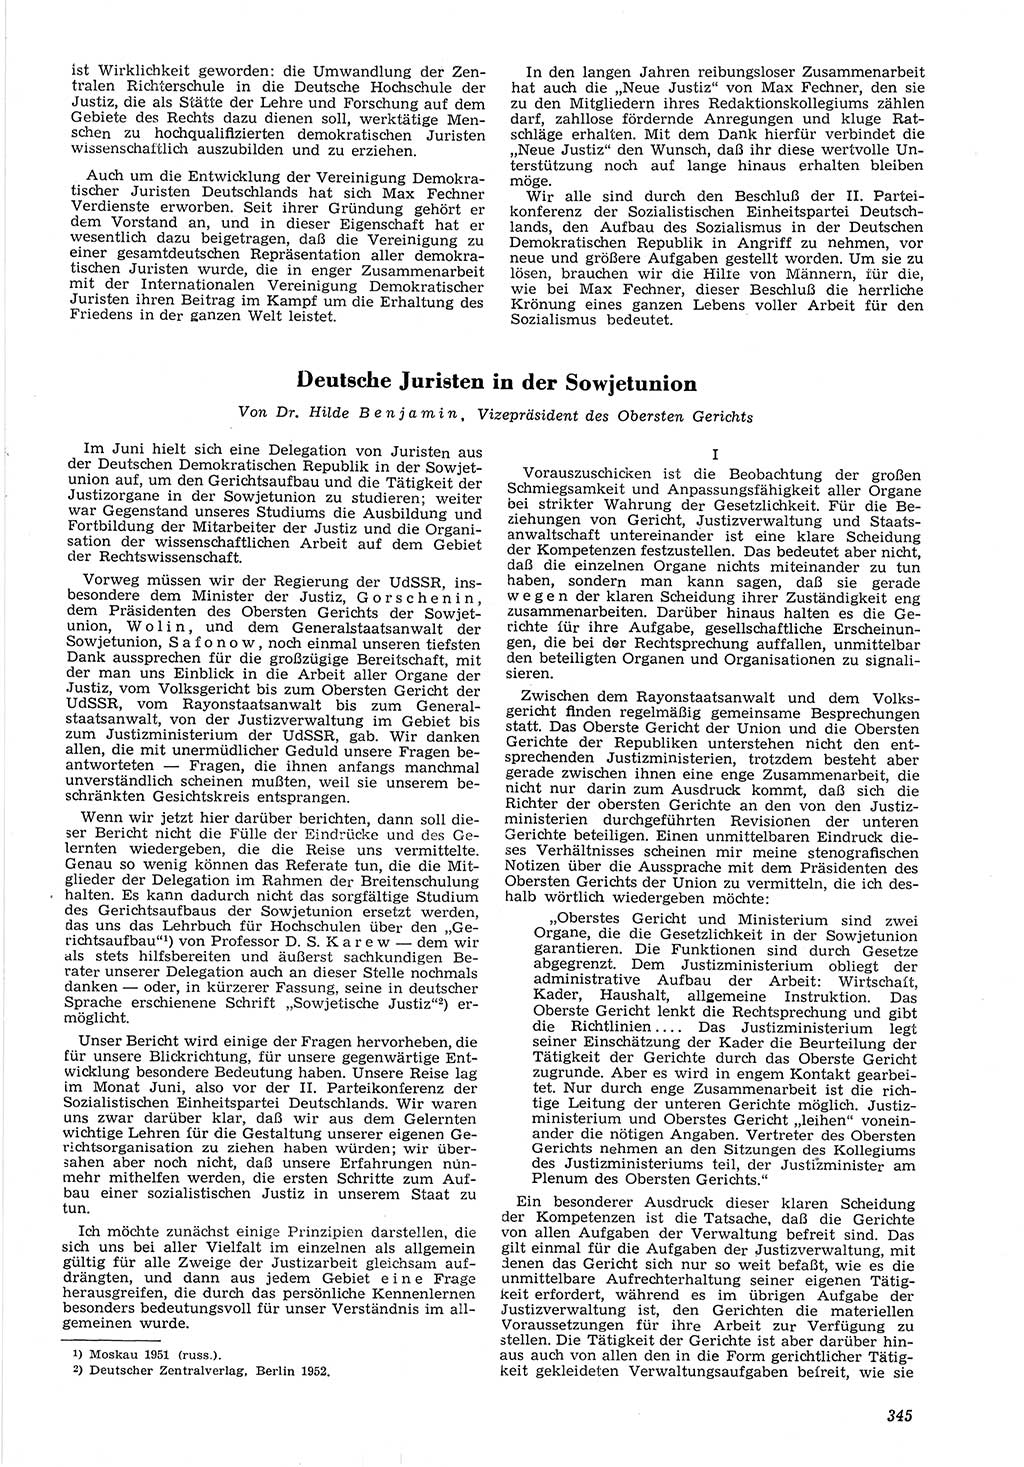 Neue Justiz (NJ), Zeitschrift für Recht und Rechtswissenschaft [Deutsche Demokratische Republik (DDR)], 6. Jahrgang 1952, Seite 345 (NJ DDR 1952, S. 345)